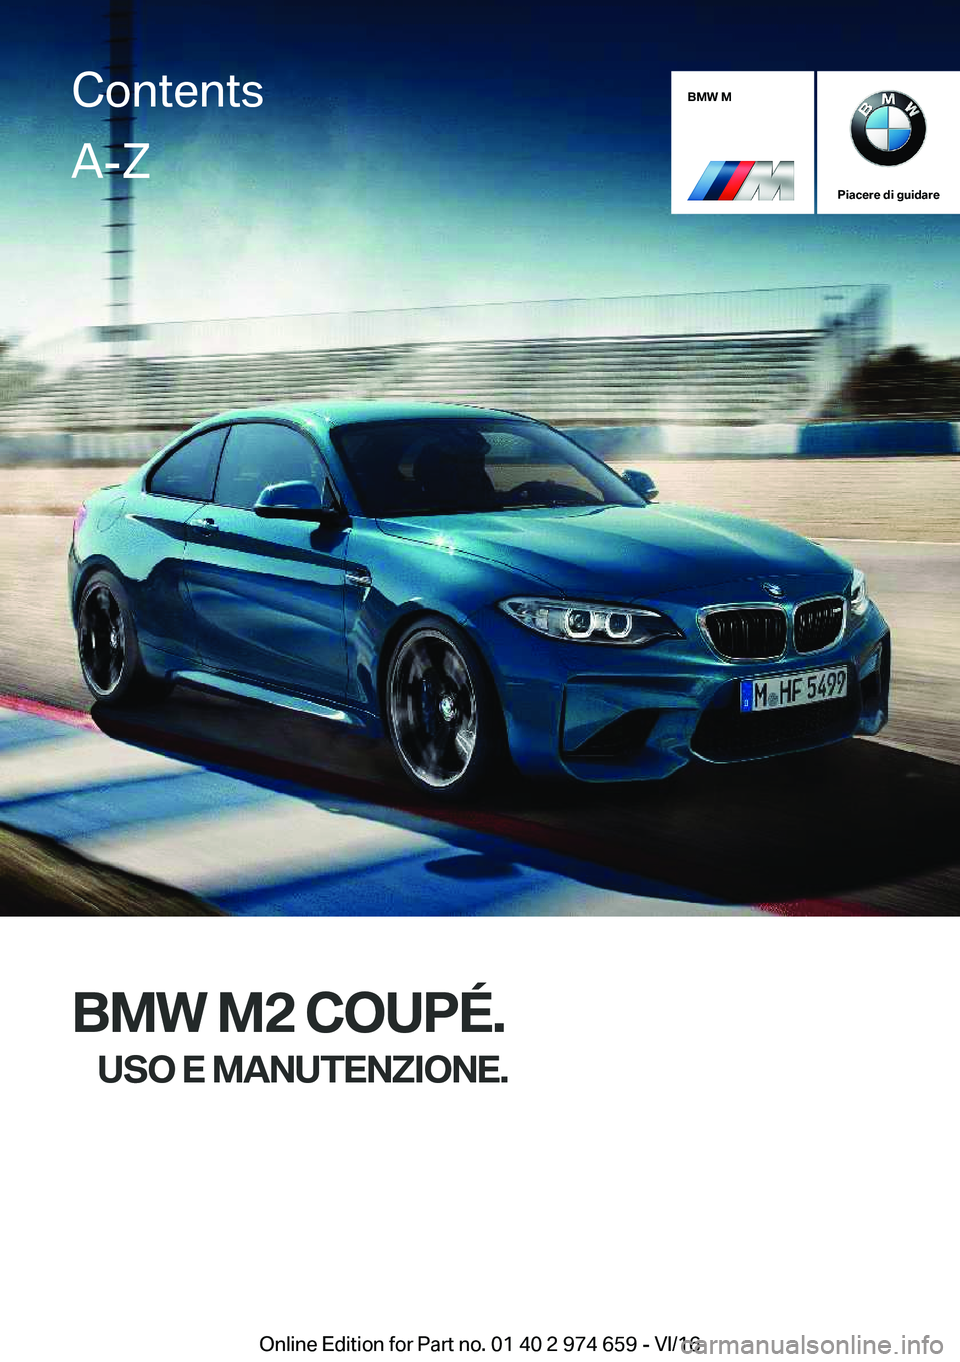 BMW M2 2017  Libretti Di Uso E manutenzione (in Italian) �B�M�W��M
�P�i�a�c�e�r�e��d�i��g�u�i�d�a�r�e
�B�M�W��M�2��C�O�U�P�